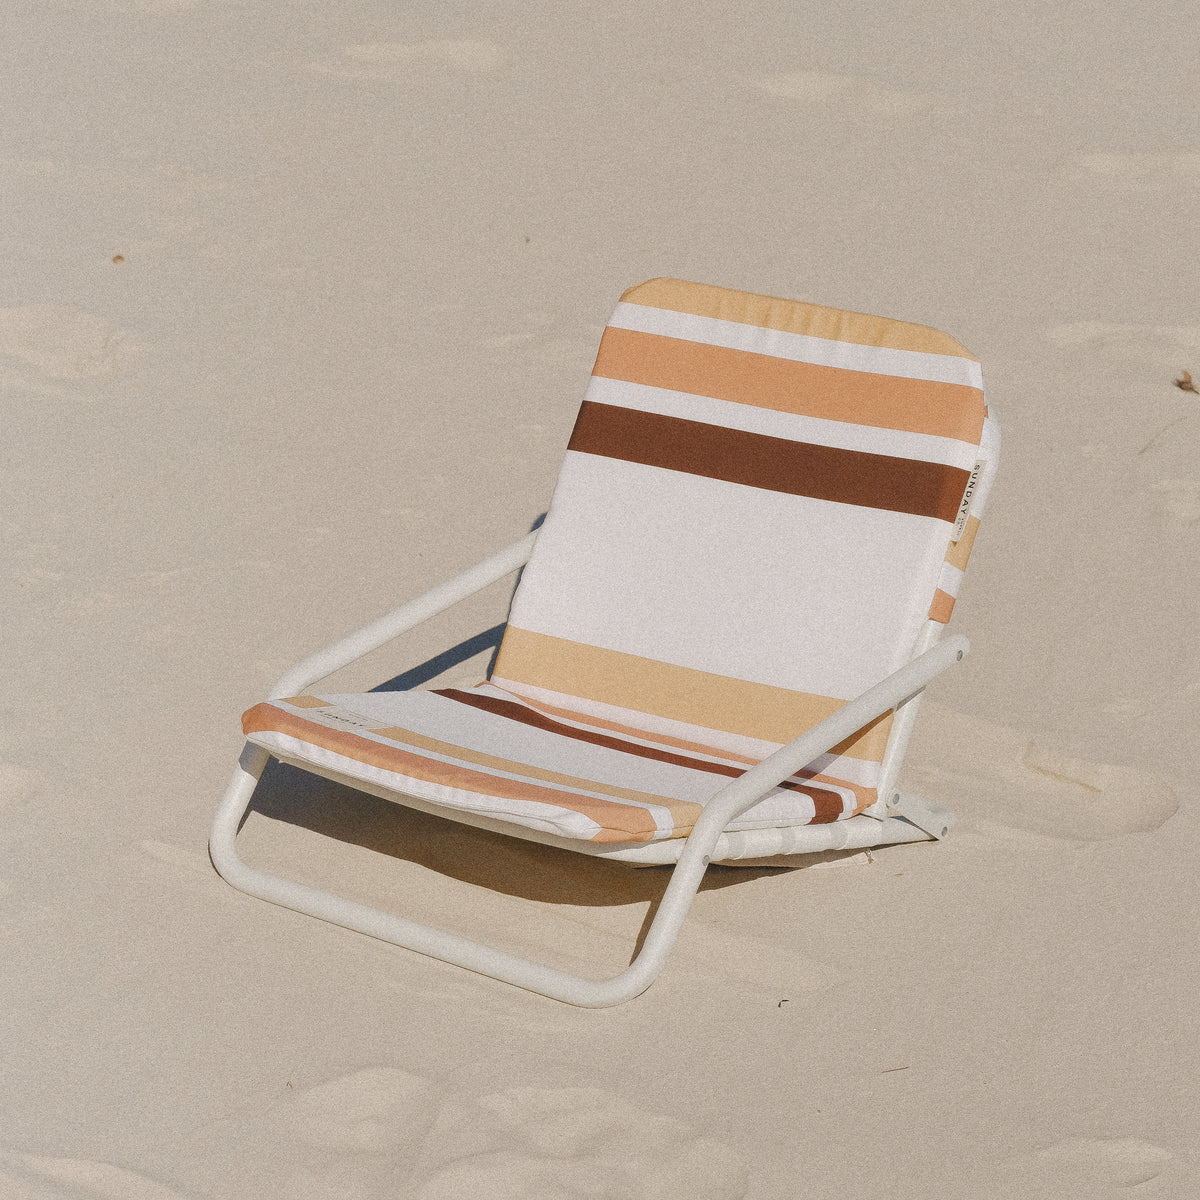 Sun Valley Beach Umbrella & Beach Chair Set